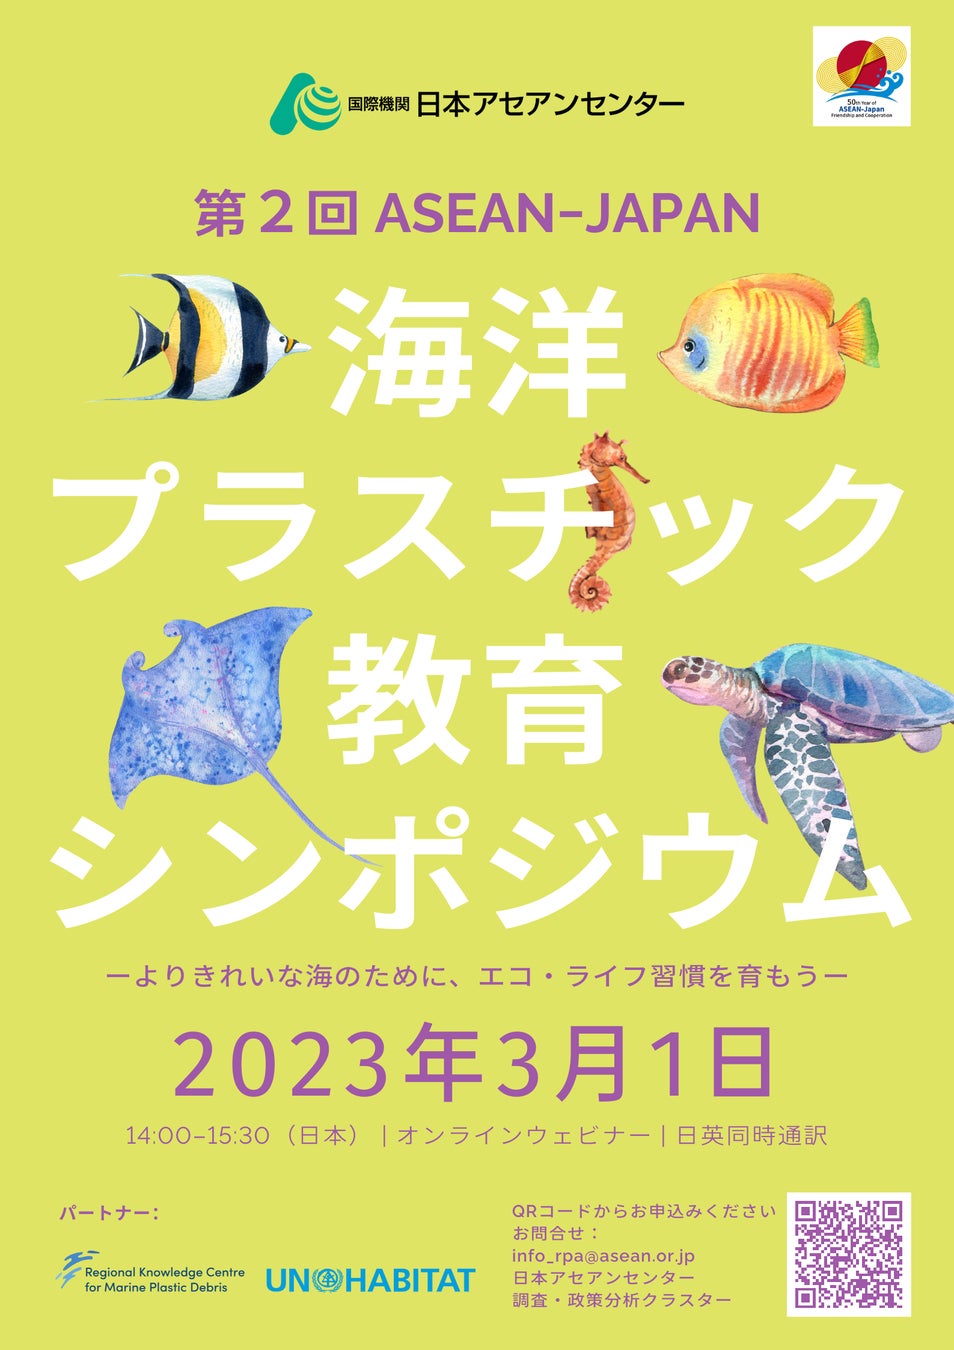 日本とASEAN諸国の生徒が海洋プラスチック削減への取り組みを発表「第2回 ASEAN-Japan 海洋プラスチック教育シンポジウム」のサブ画像1_参加登録受け付け中・参加無料